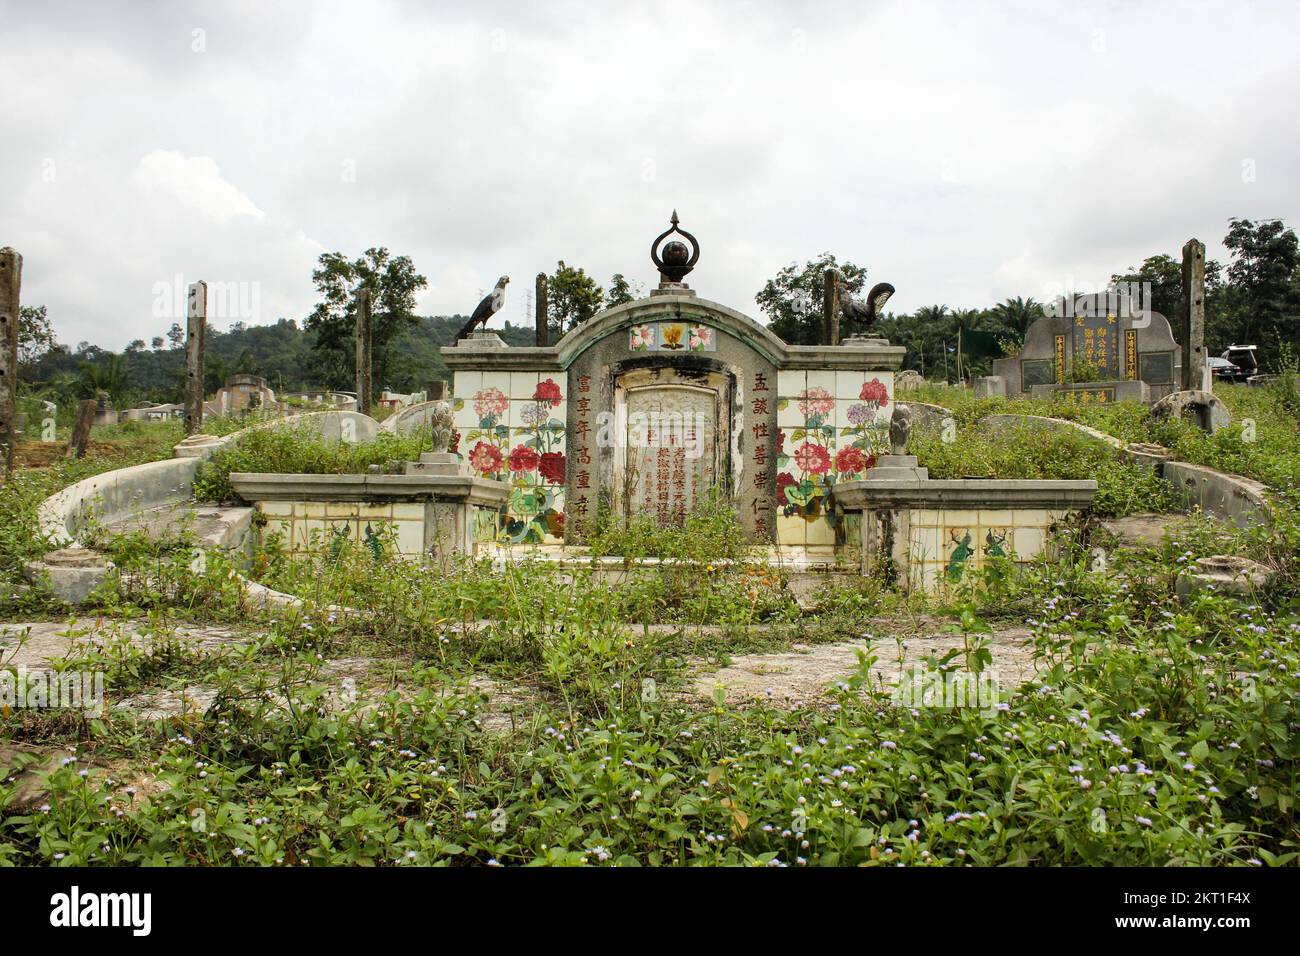 Ipoh, Perak, Malaisie - novembre 2012 : un ancien cimetière chinois sur l'herbe verte d'une colline au large de la ville abandonnée de Pusing près d'Ipoh. Banque D'Images